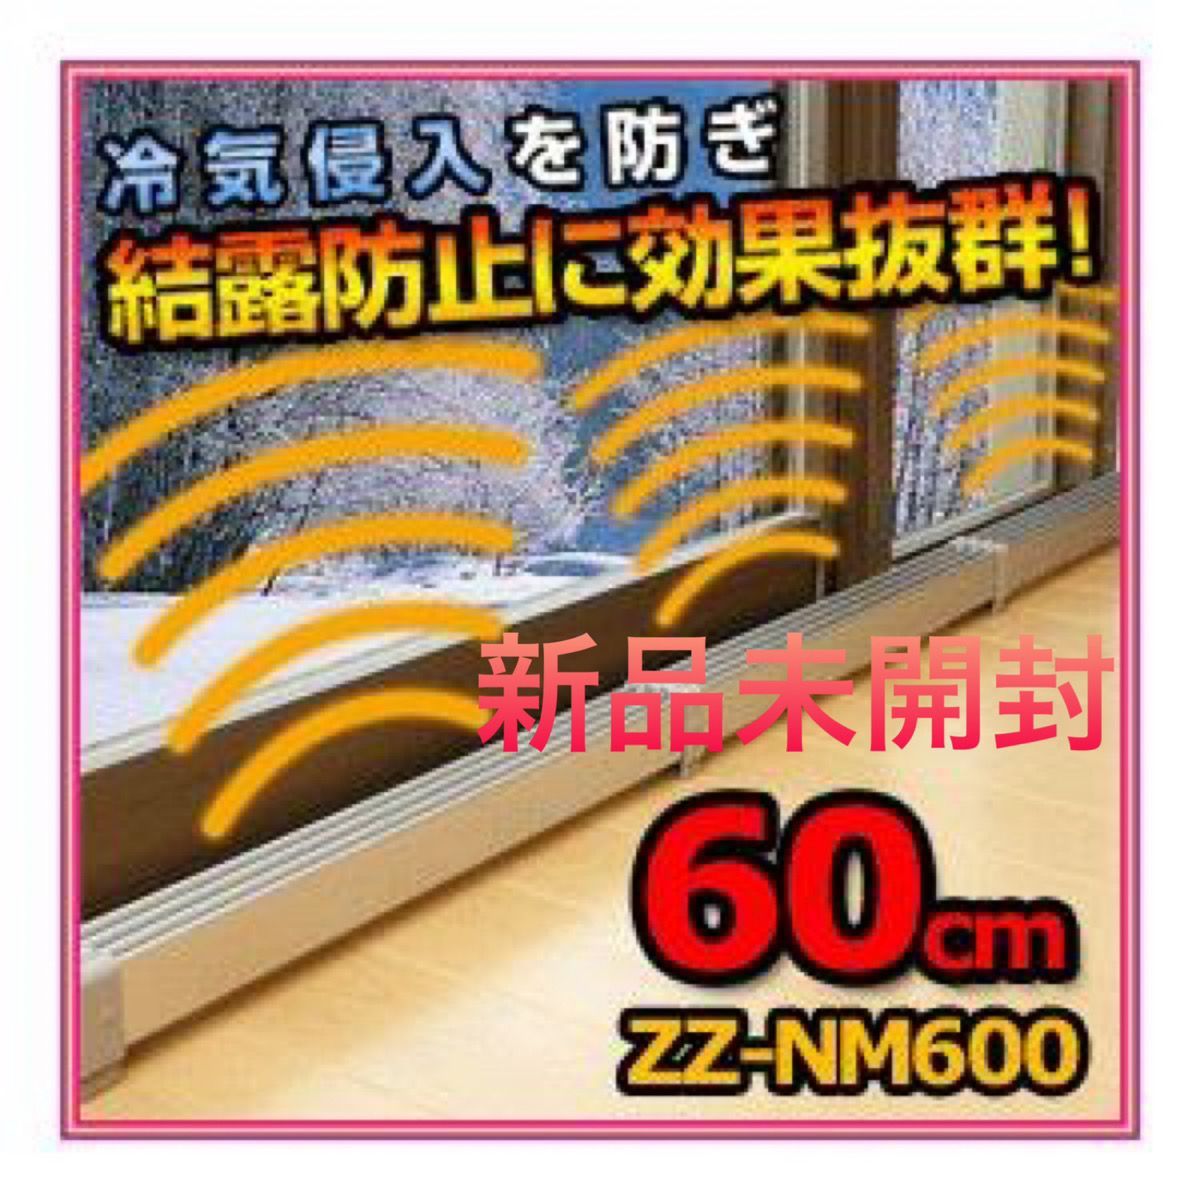 マルチヒーター・結露防止 窓ヒーター60型 (２本) ZZ-NM600 【美品】